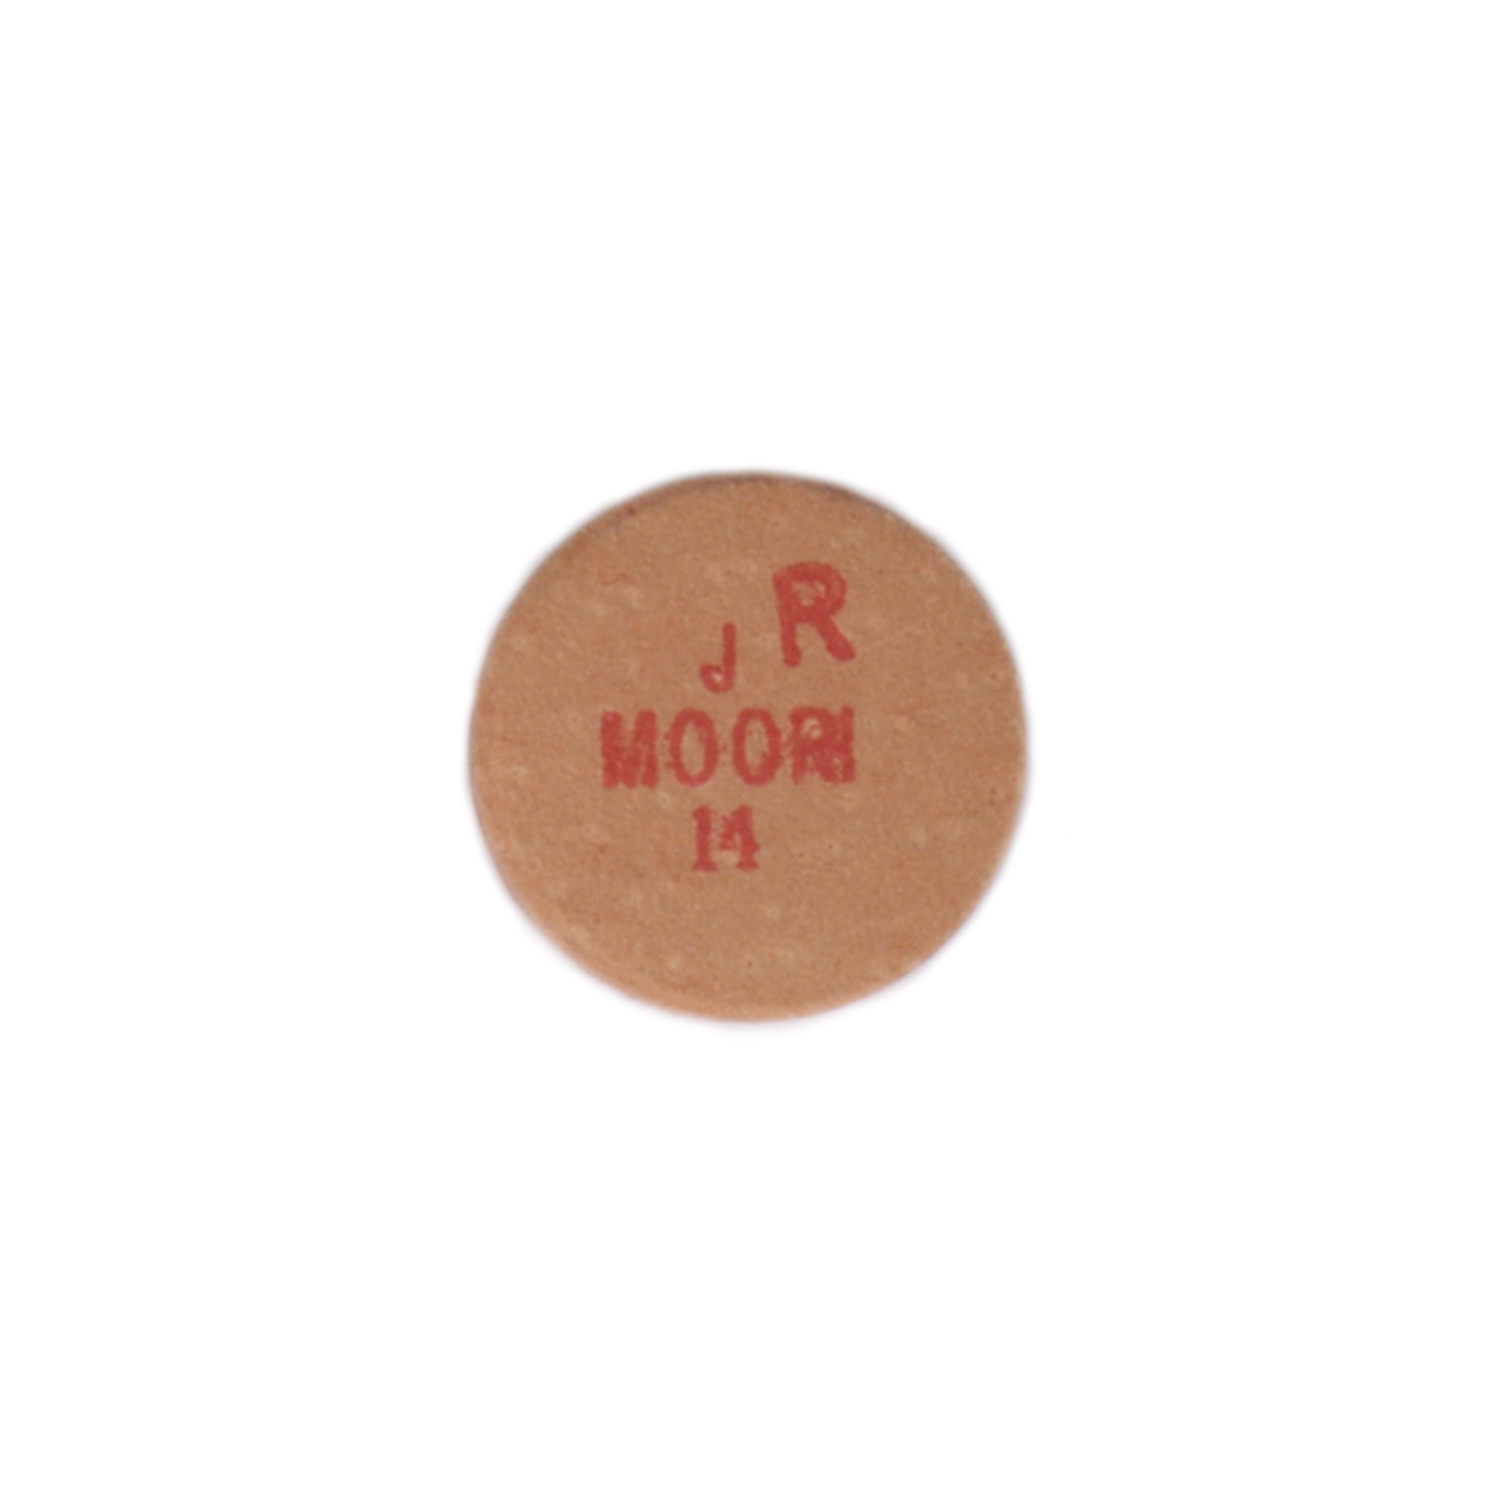 KA0168: Moori Jewel cue tip Red p. st. #3